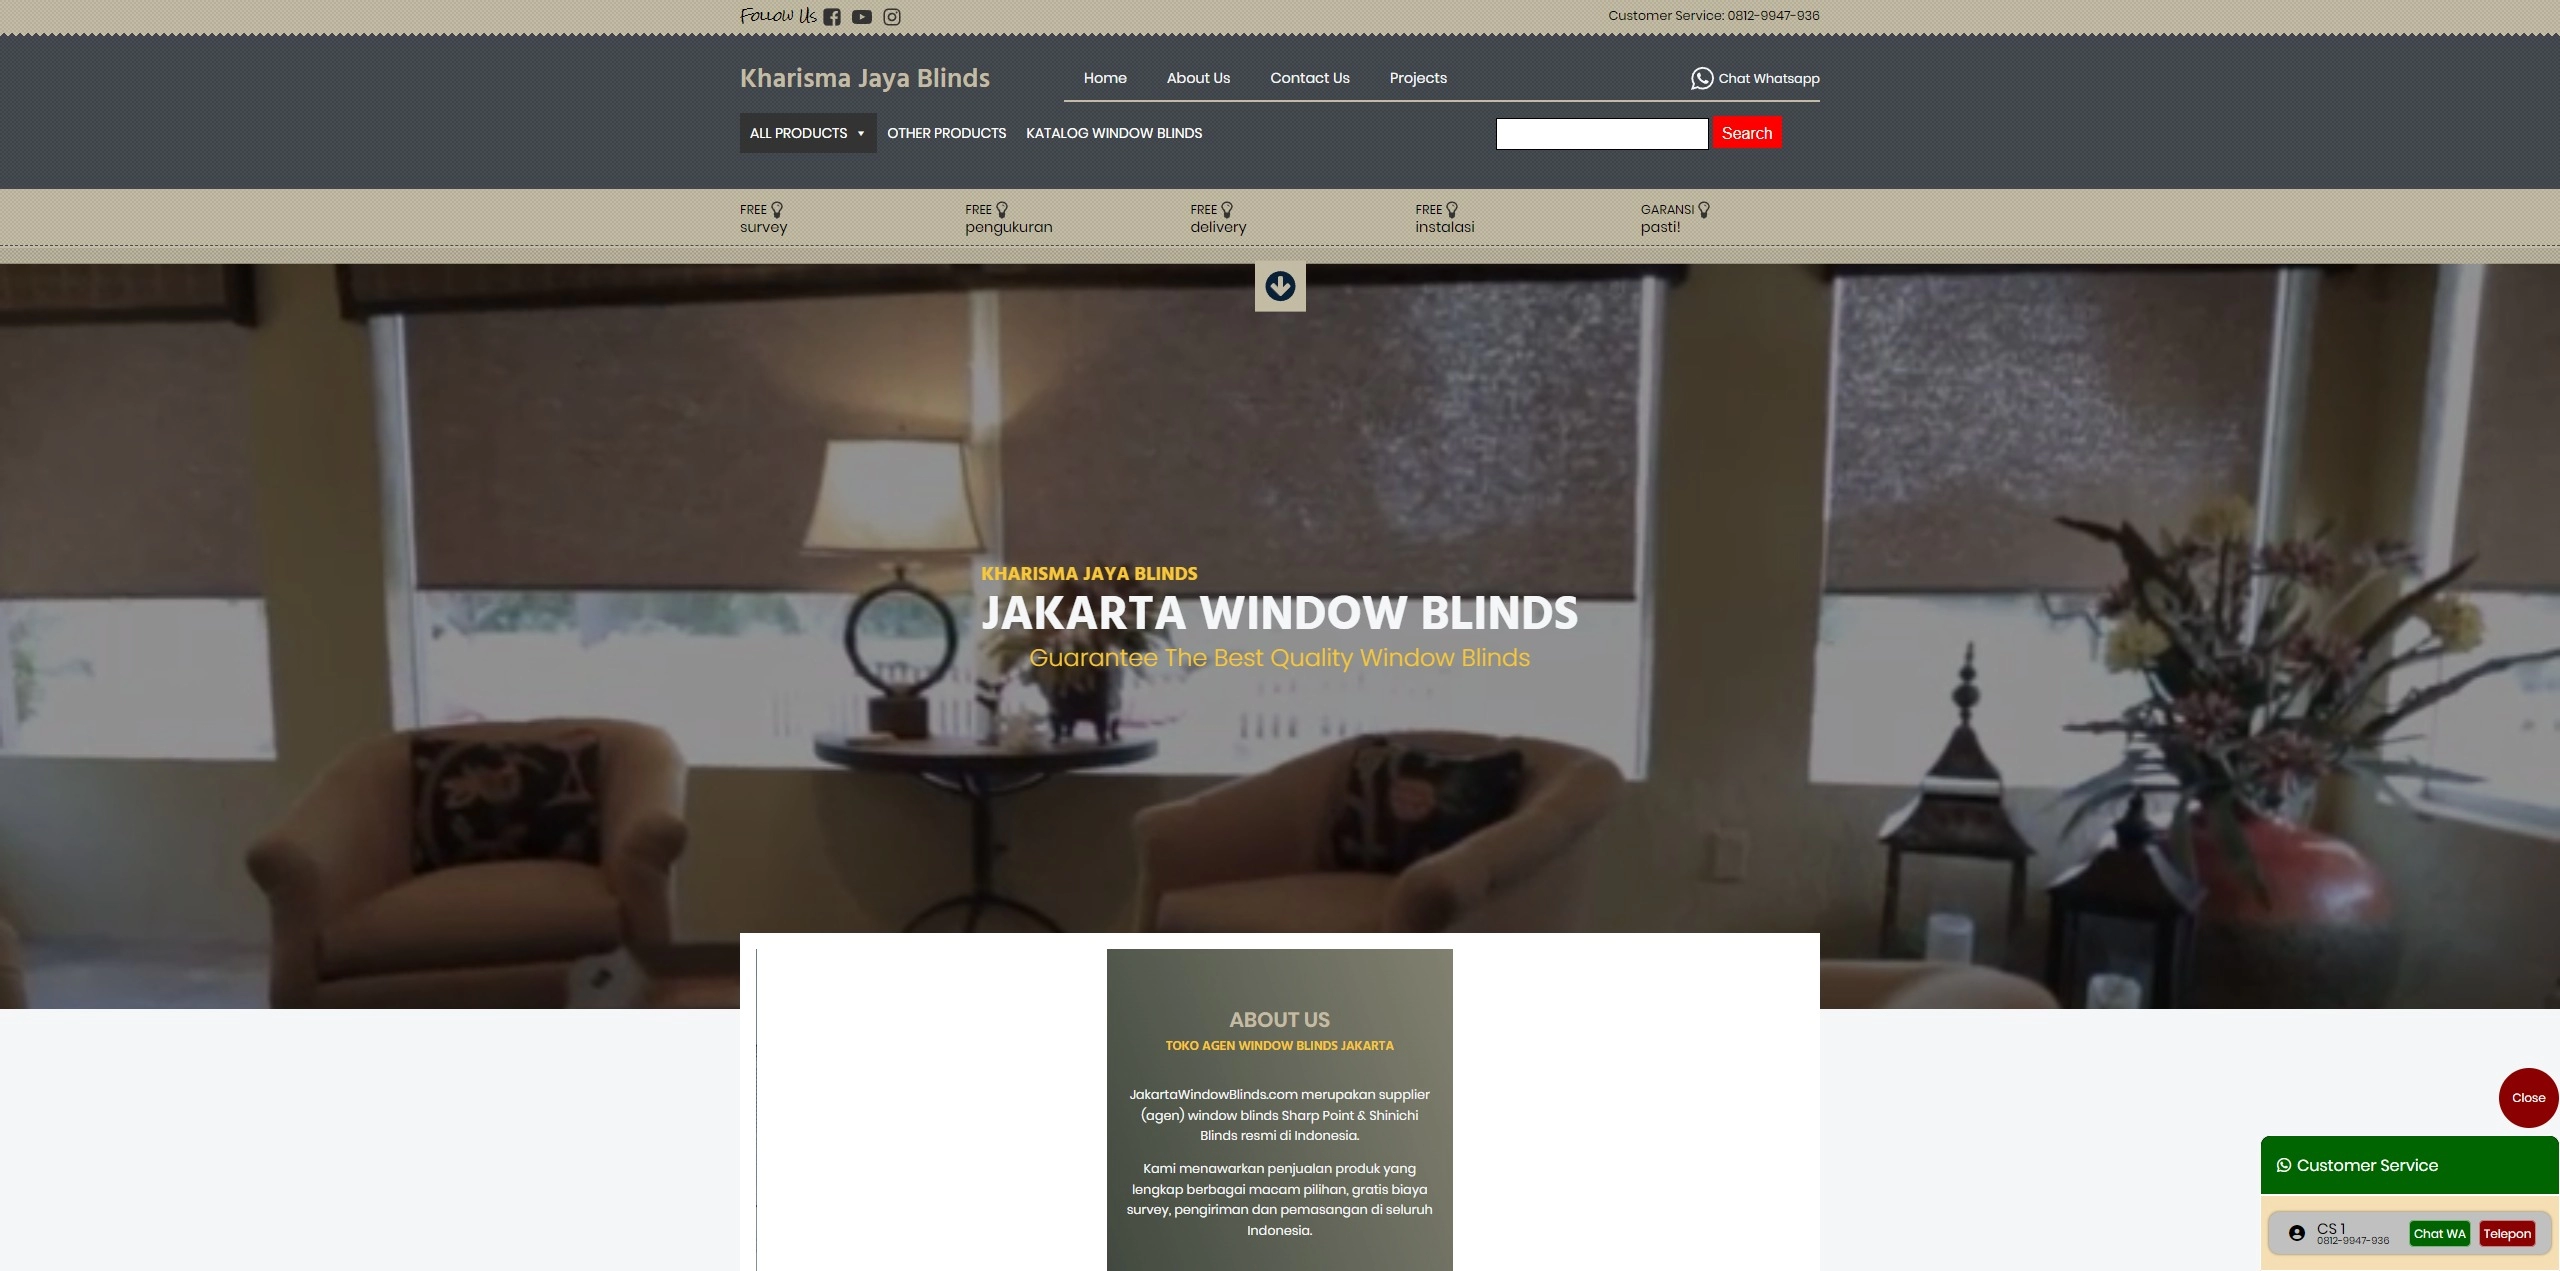 Jakarta Window Blinds